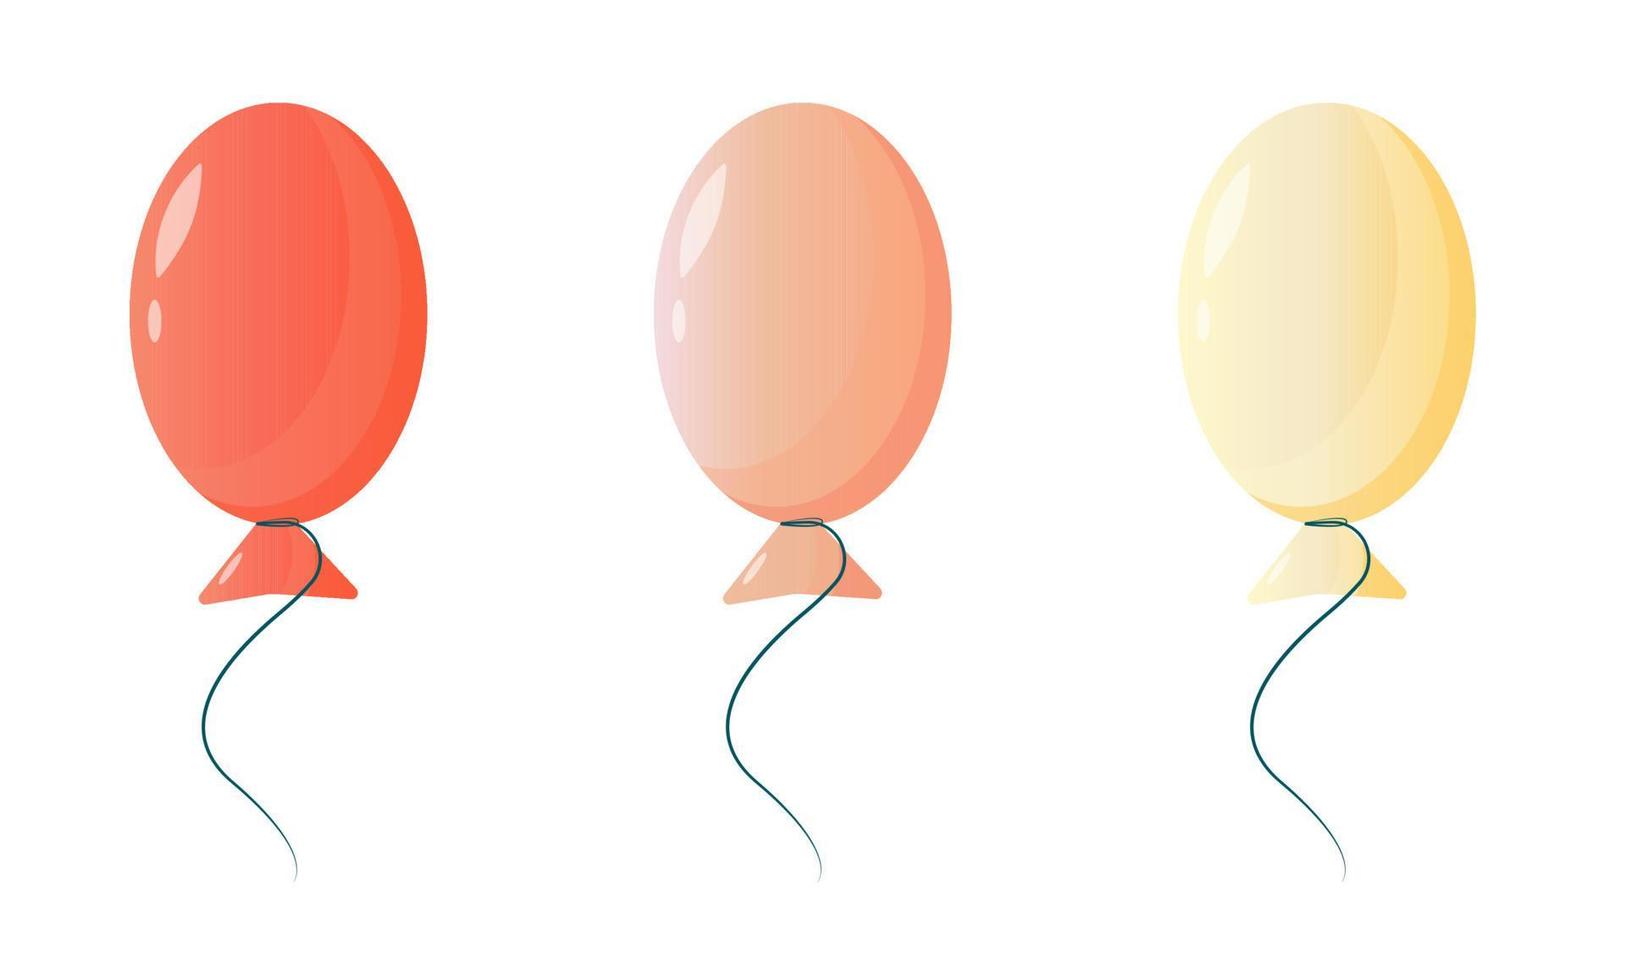 verzameling cartoonballonnen voor het decoreren van een feestelijk feest, bruiloft, verjaardag, bedrijfsfeest, jubileum. eenvoudige cartoon vectorillustratie. het concept van vakantiedecoratie vector